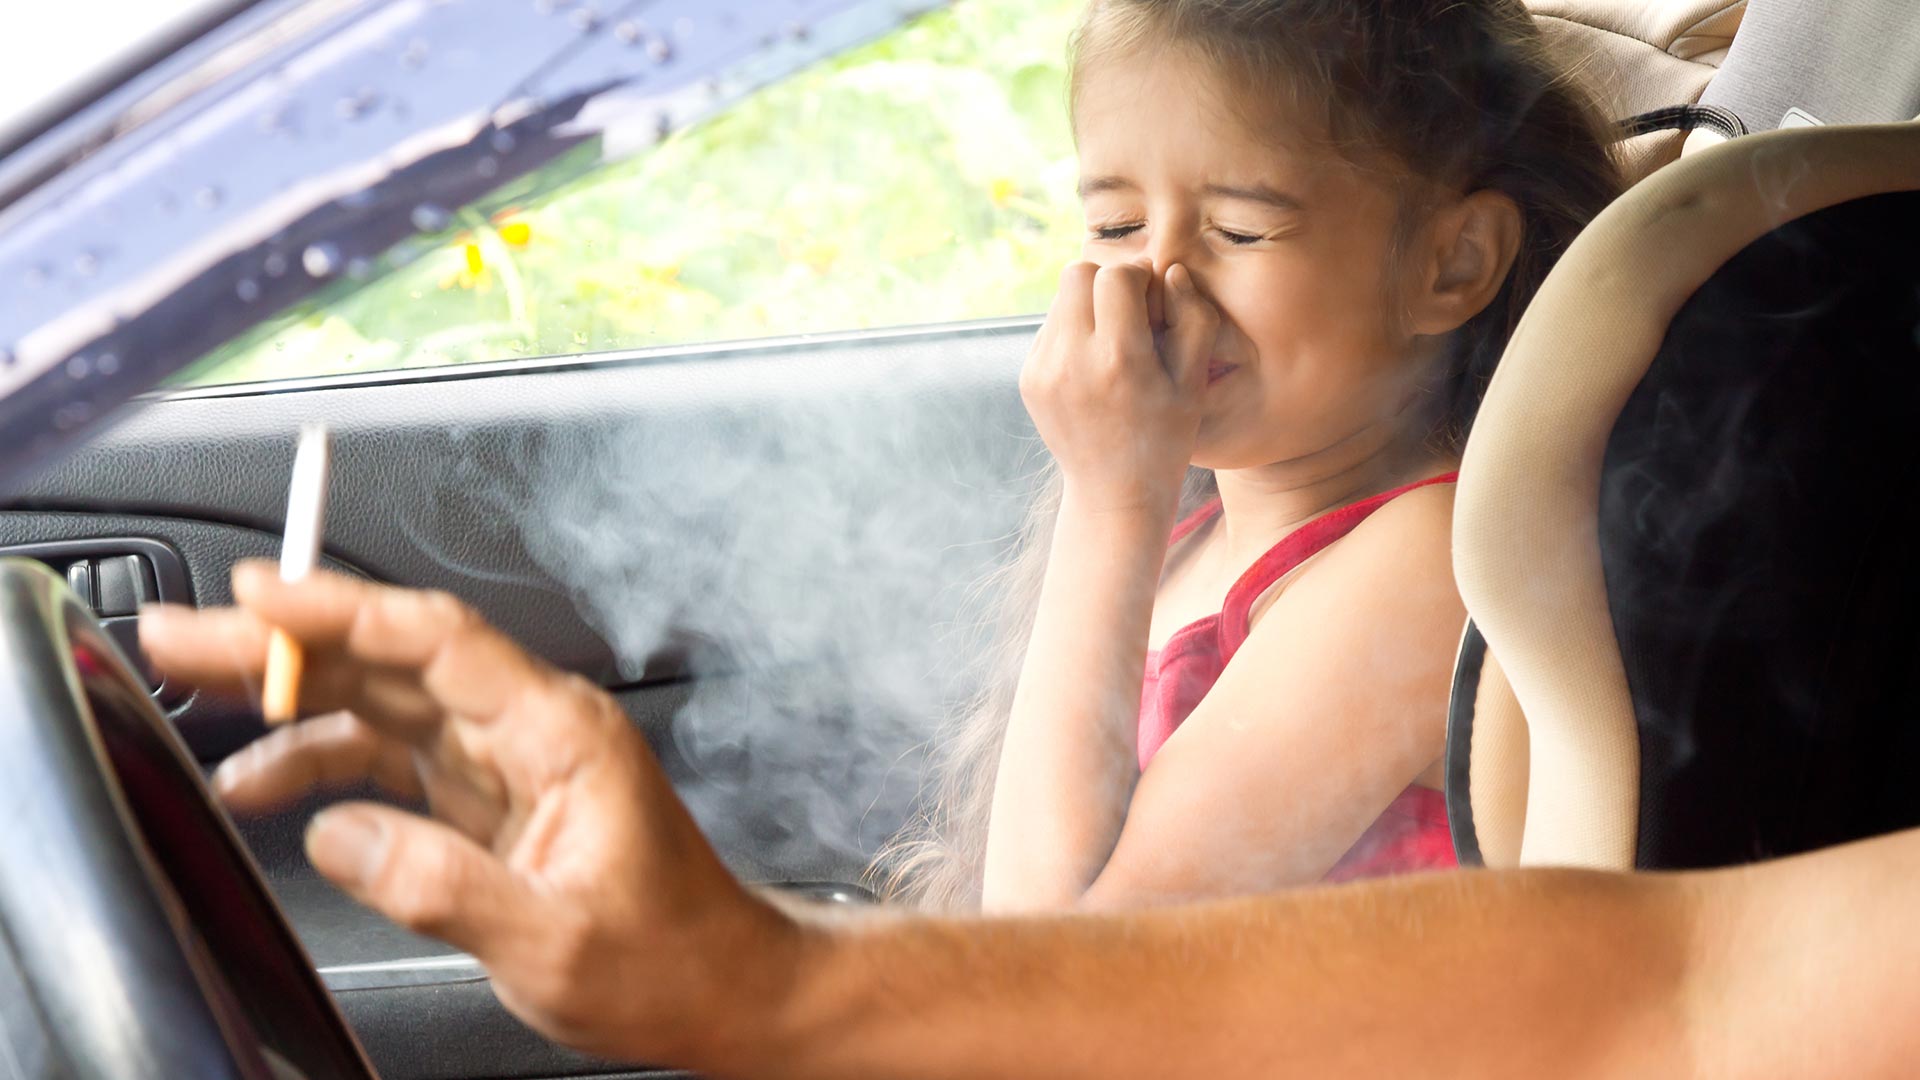 Roken in auto bij kinderen verboden